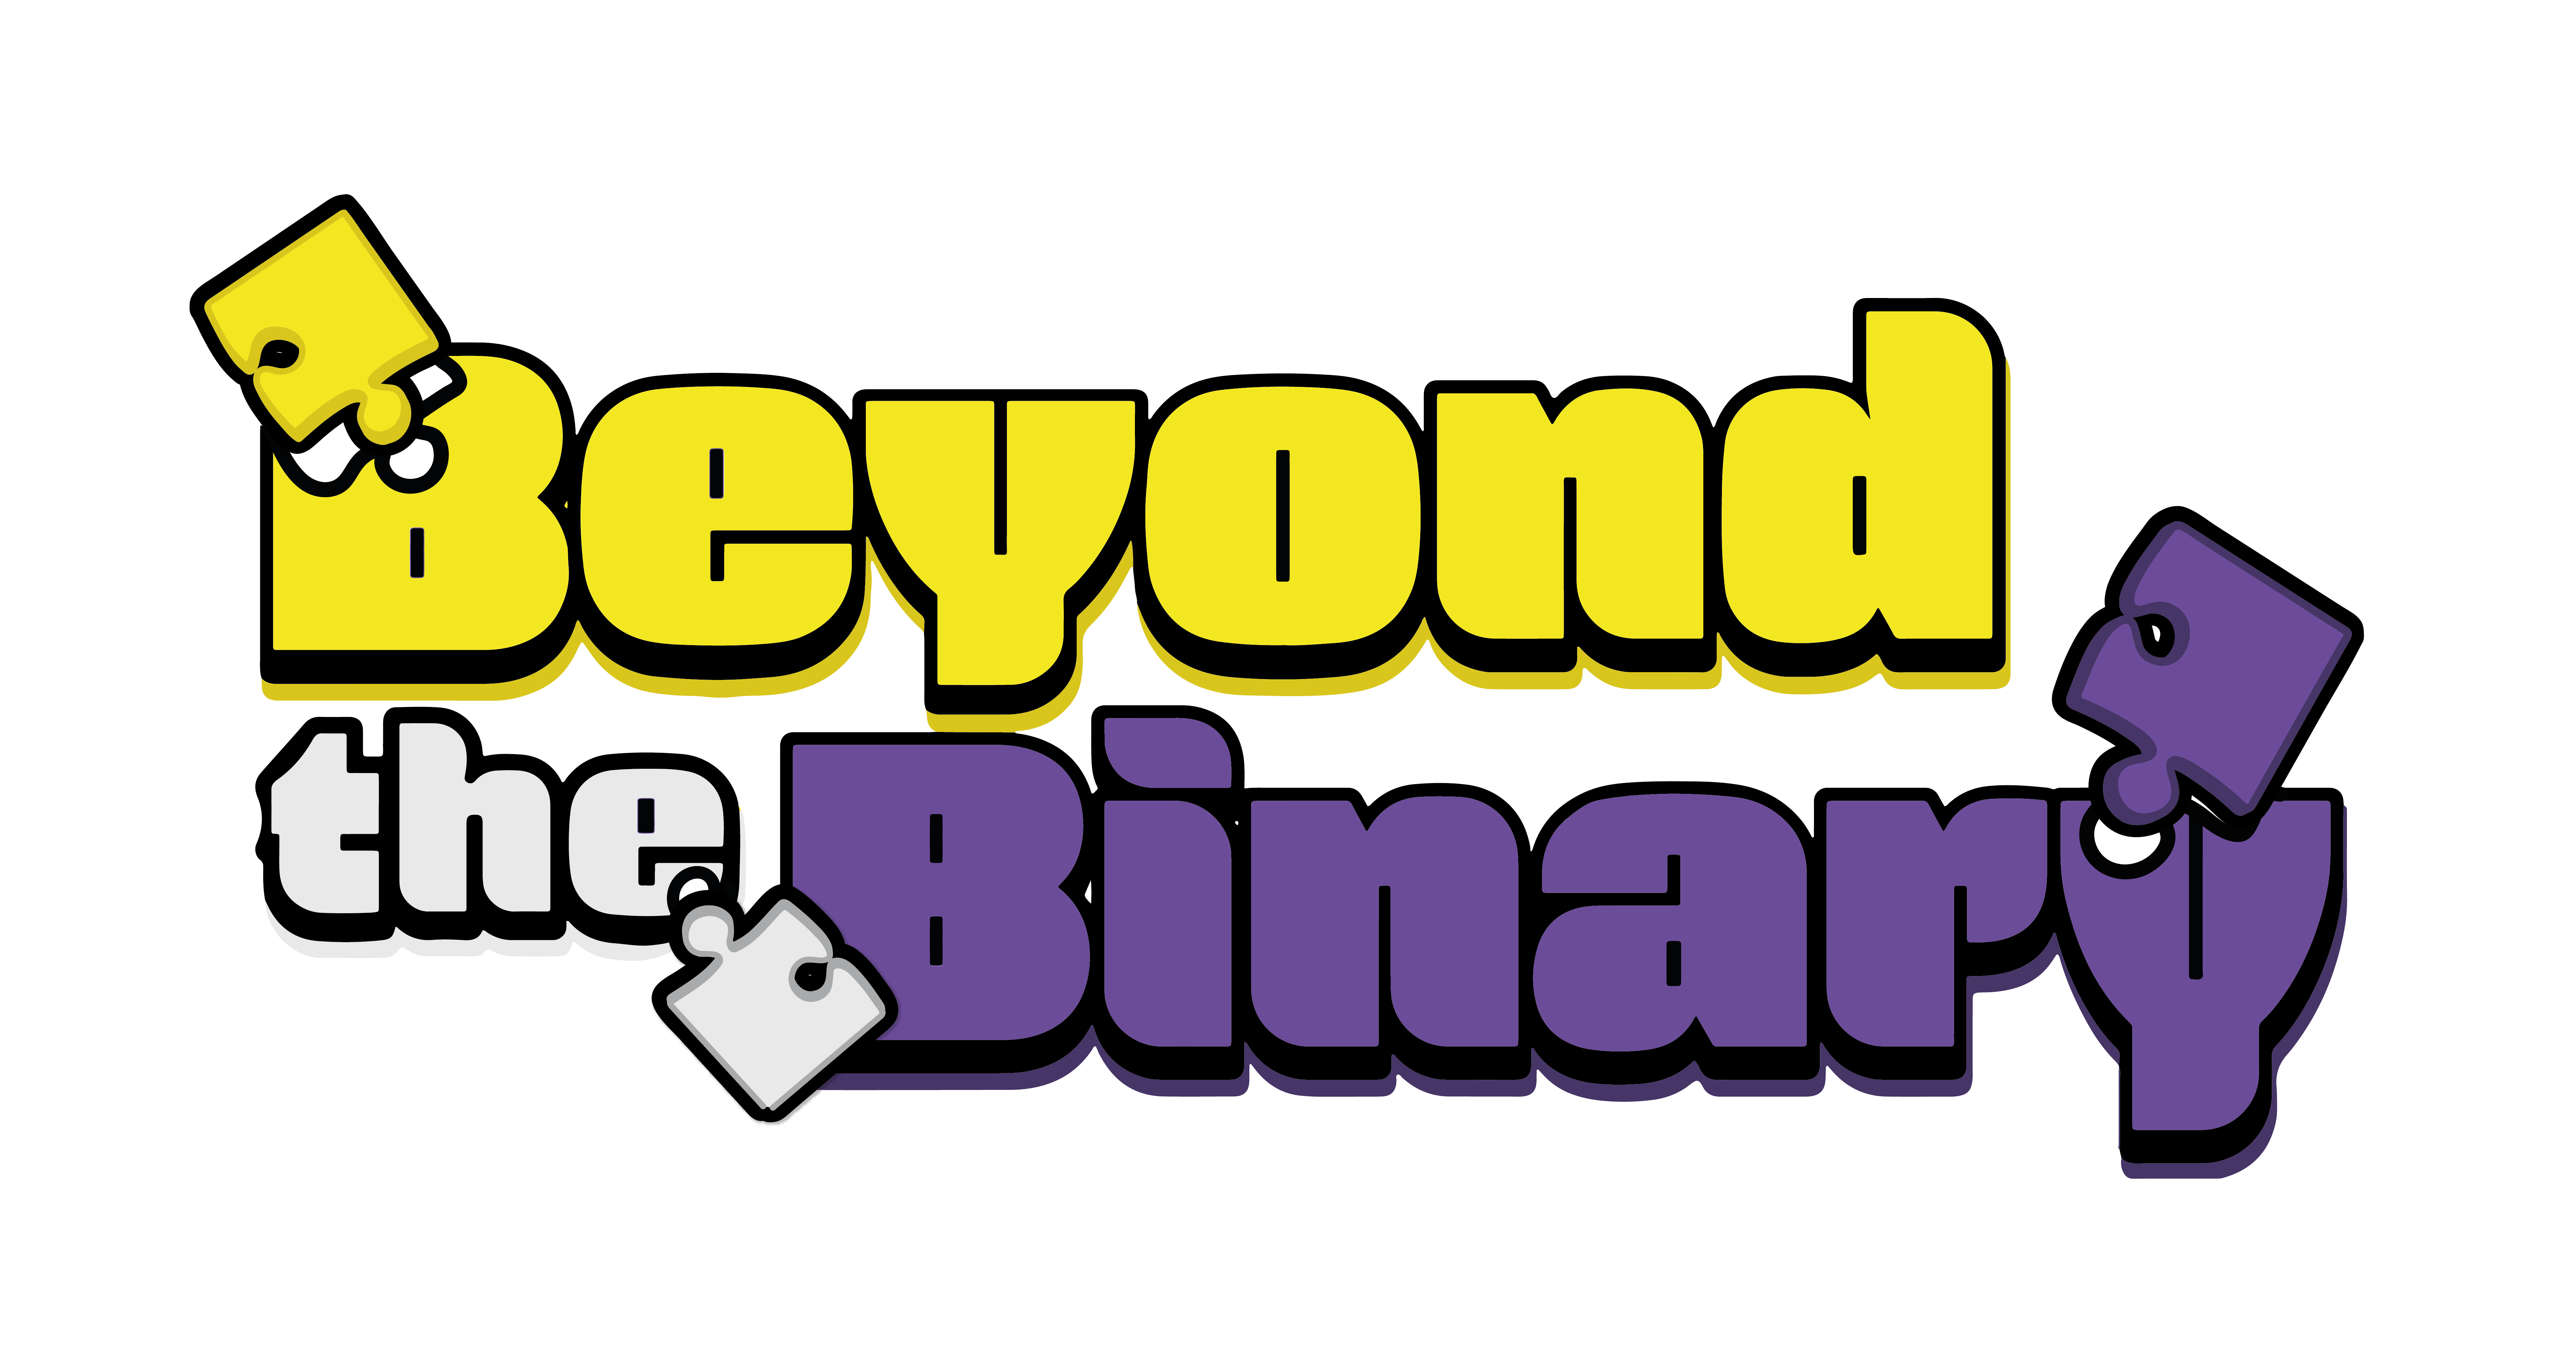 Beyond the Binary logo